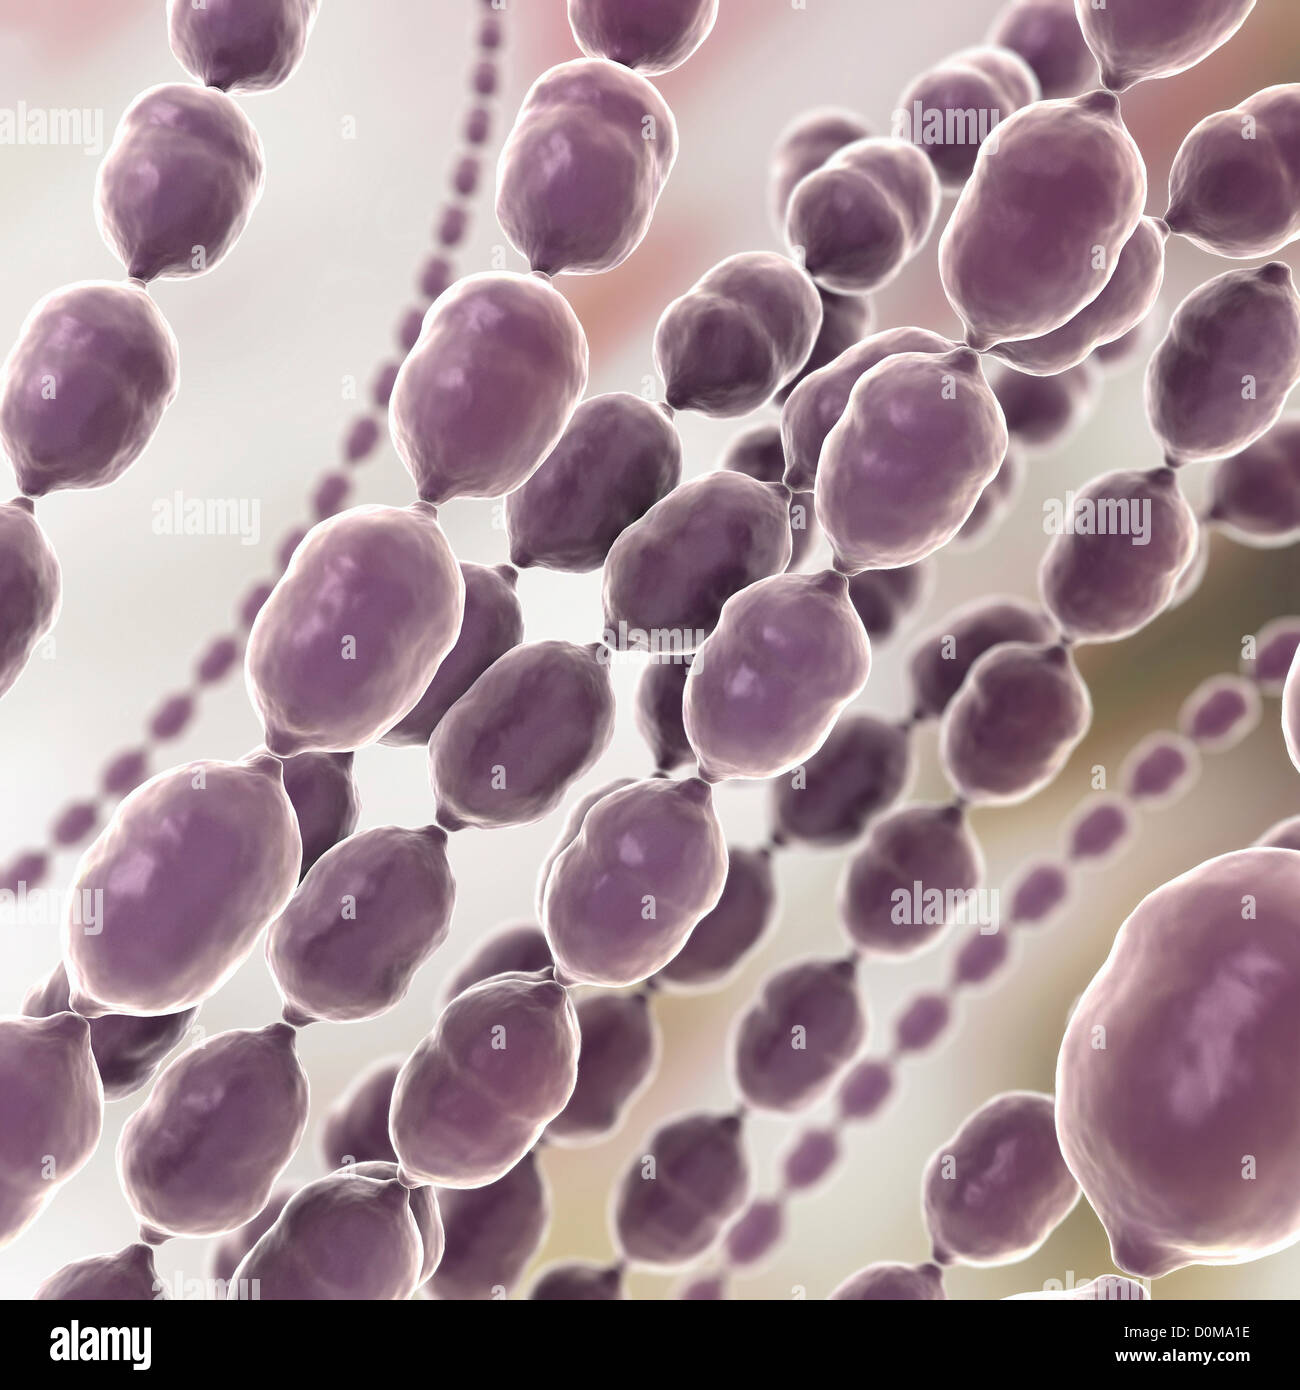 Stilisierte Nahaufnahme von Kokken Bakterium. Enterokokken, Staphylokokken und Streptokokken sind alle Arten von Kokken Bakterien. Stockfoto